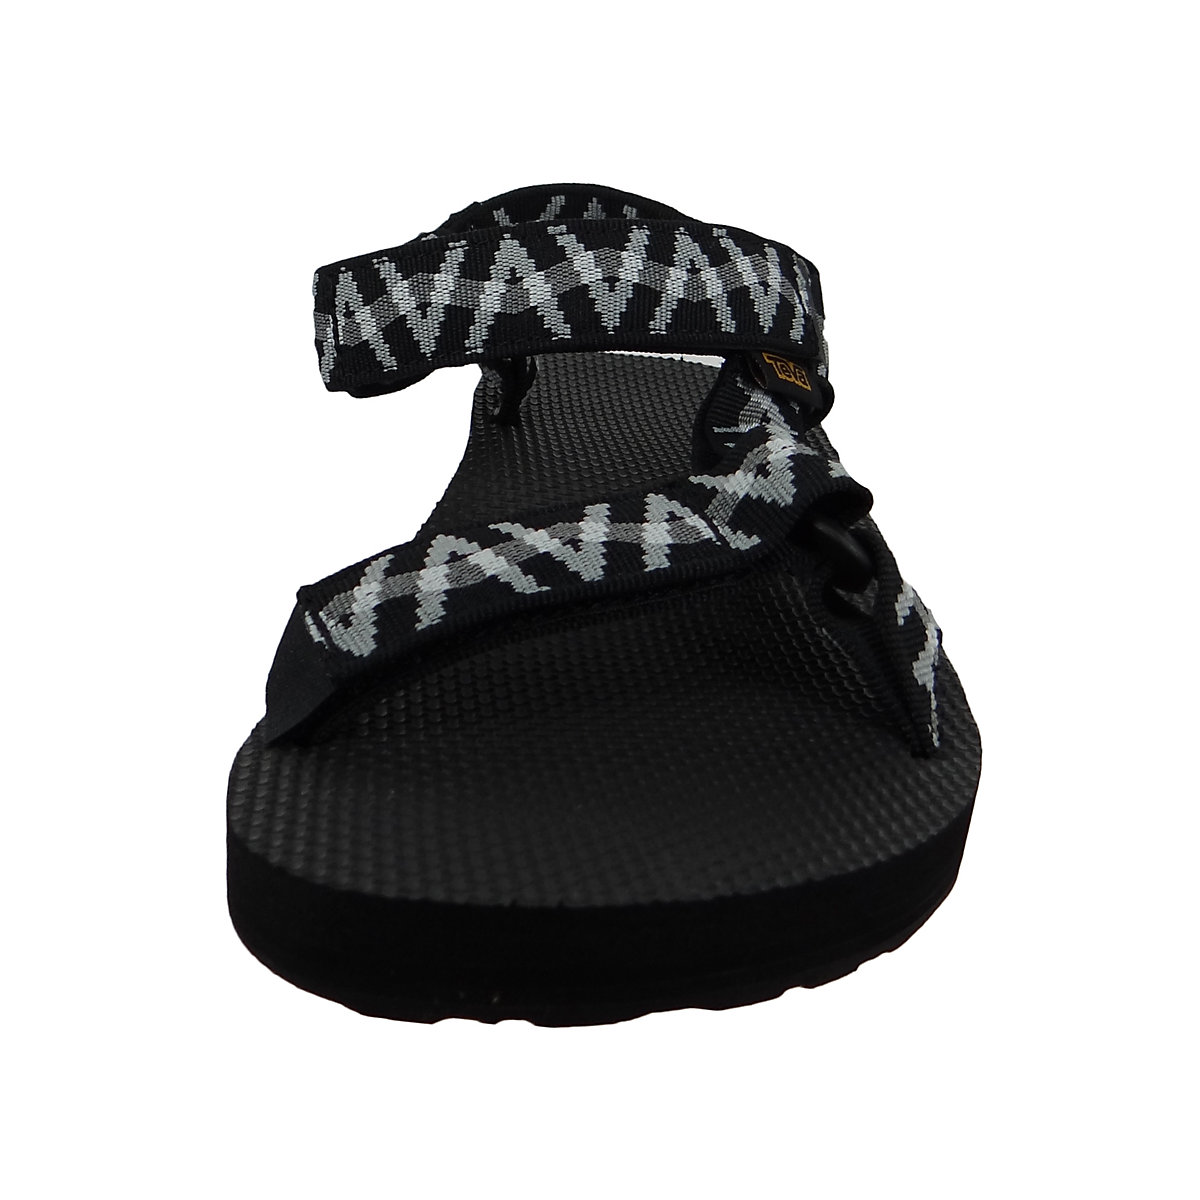 Teva Herren Trekking Sandalen Wanderschuhe Original Universal 1004006 Schwarz LSBG Black/Grey Textil mit EVA Klassische Sandalen schwarz